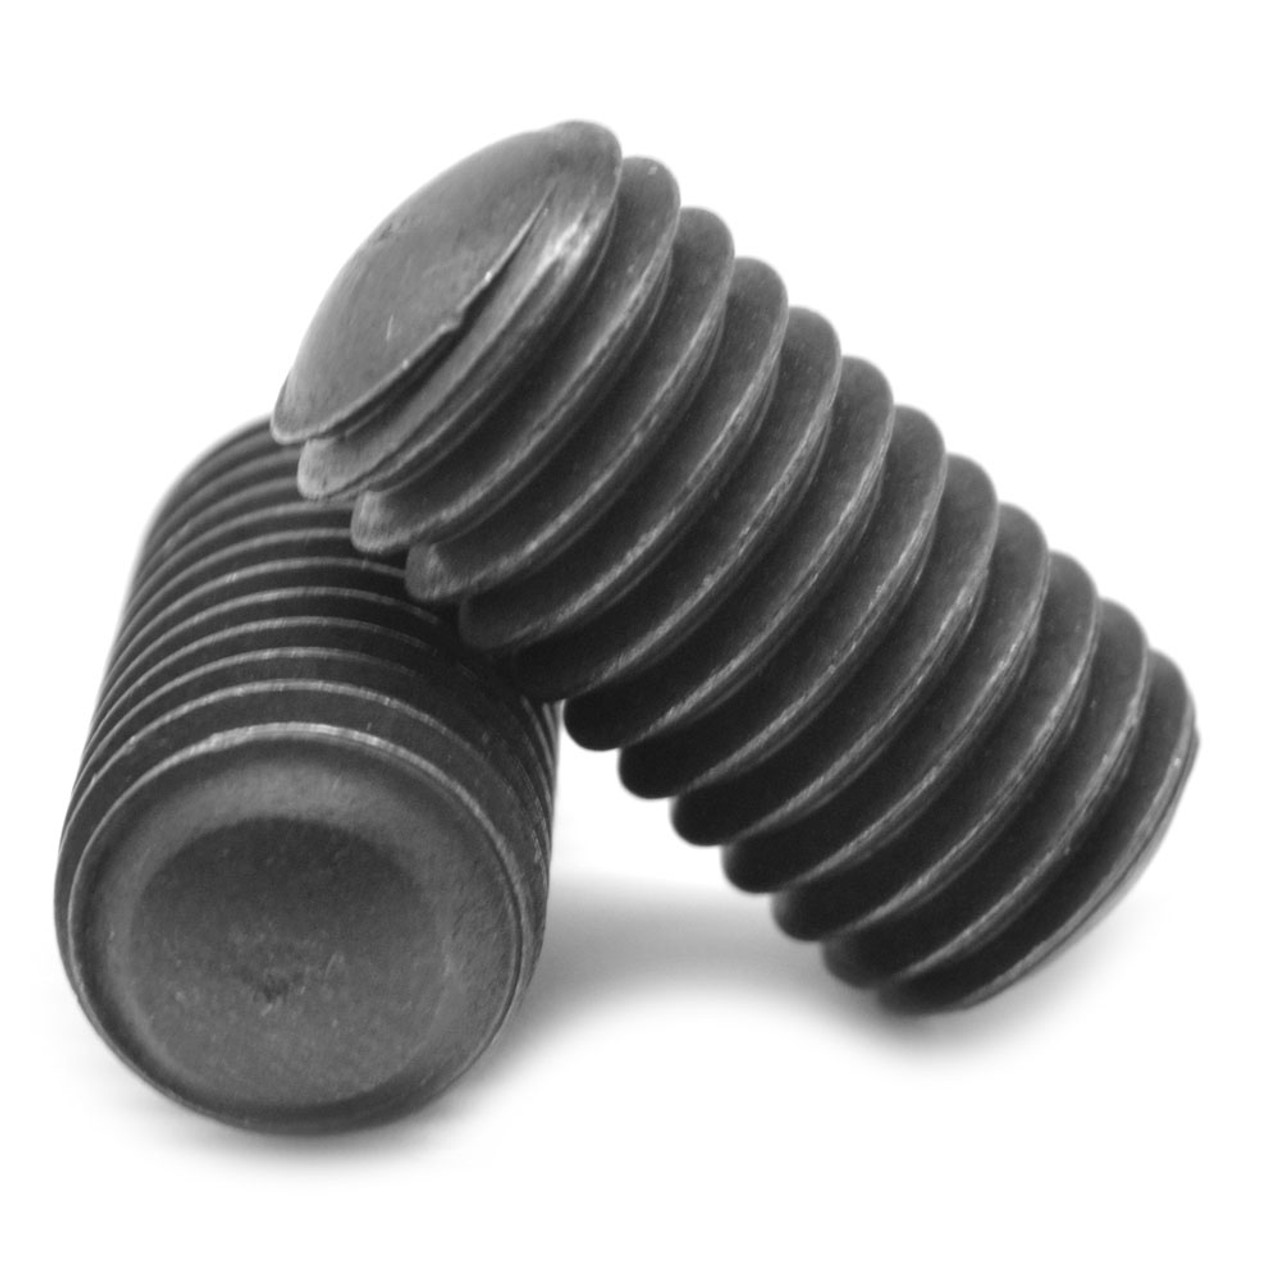 #4-40 x 7/16" Coarse Thread Socket Set Screw Oval Point Alloy Steel Black Oxide